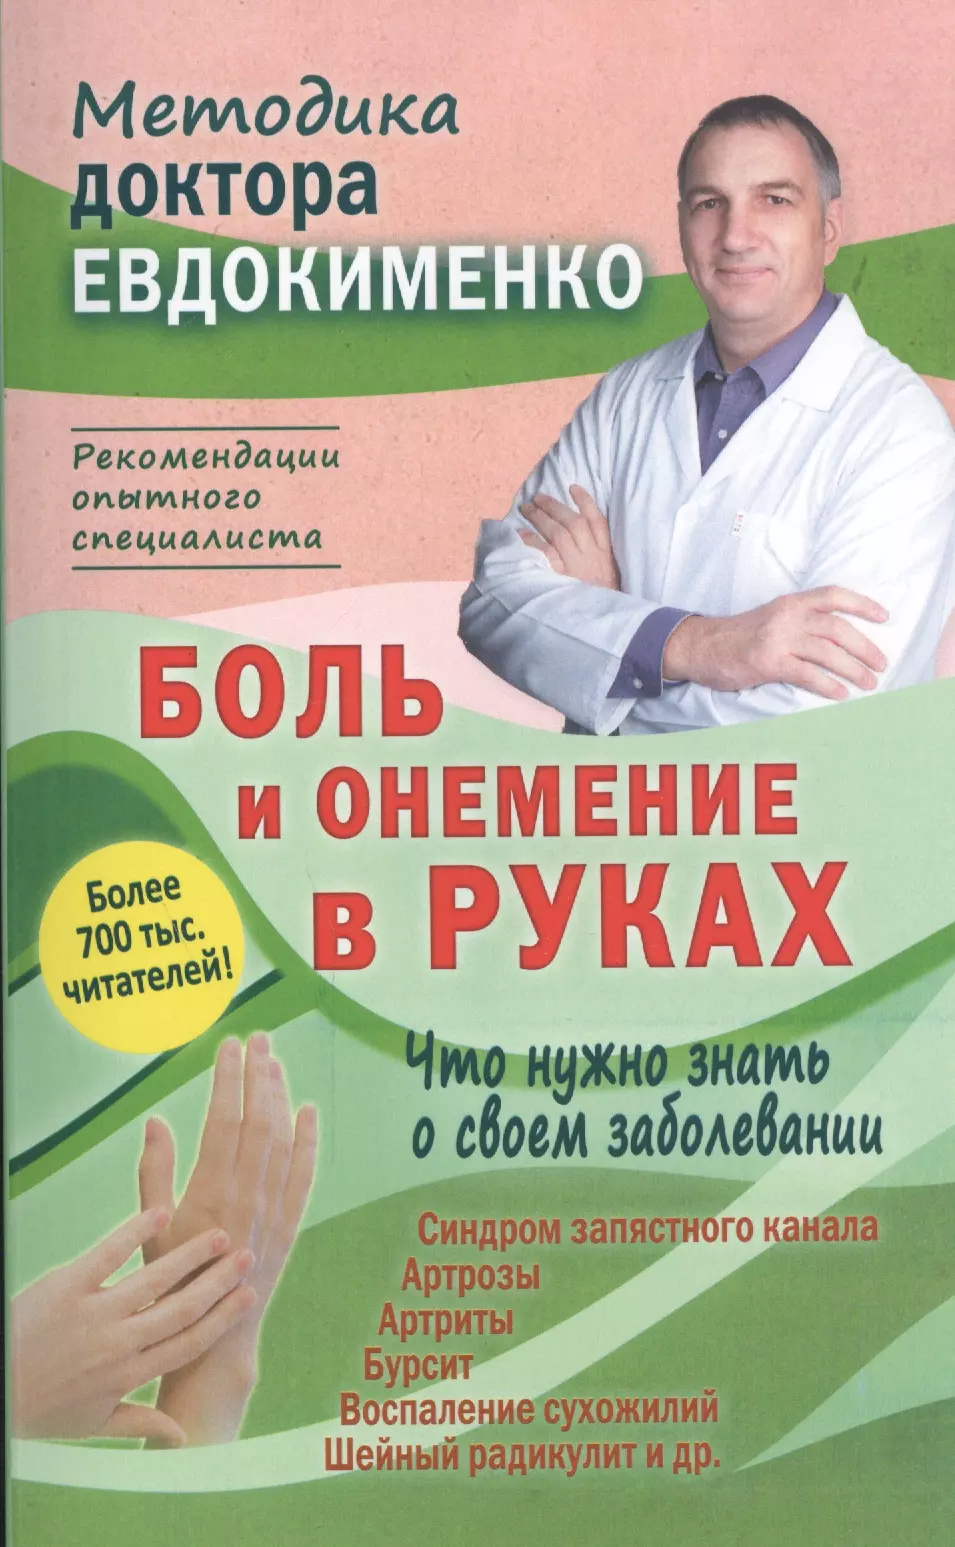 Евдокименко Павел Валериевич - Боль и онемение в руках. Что нужно знать о своем заболевании. 2-е издание